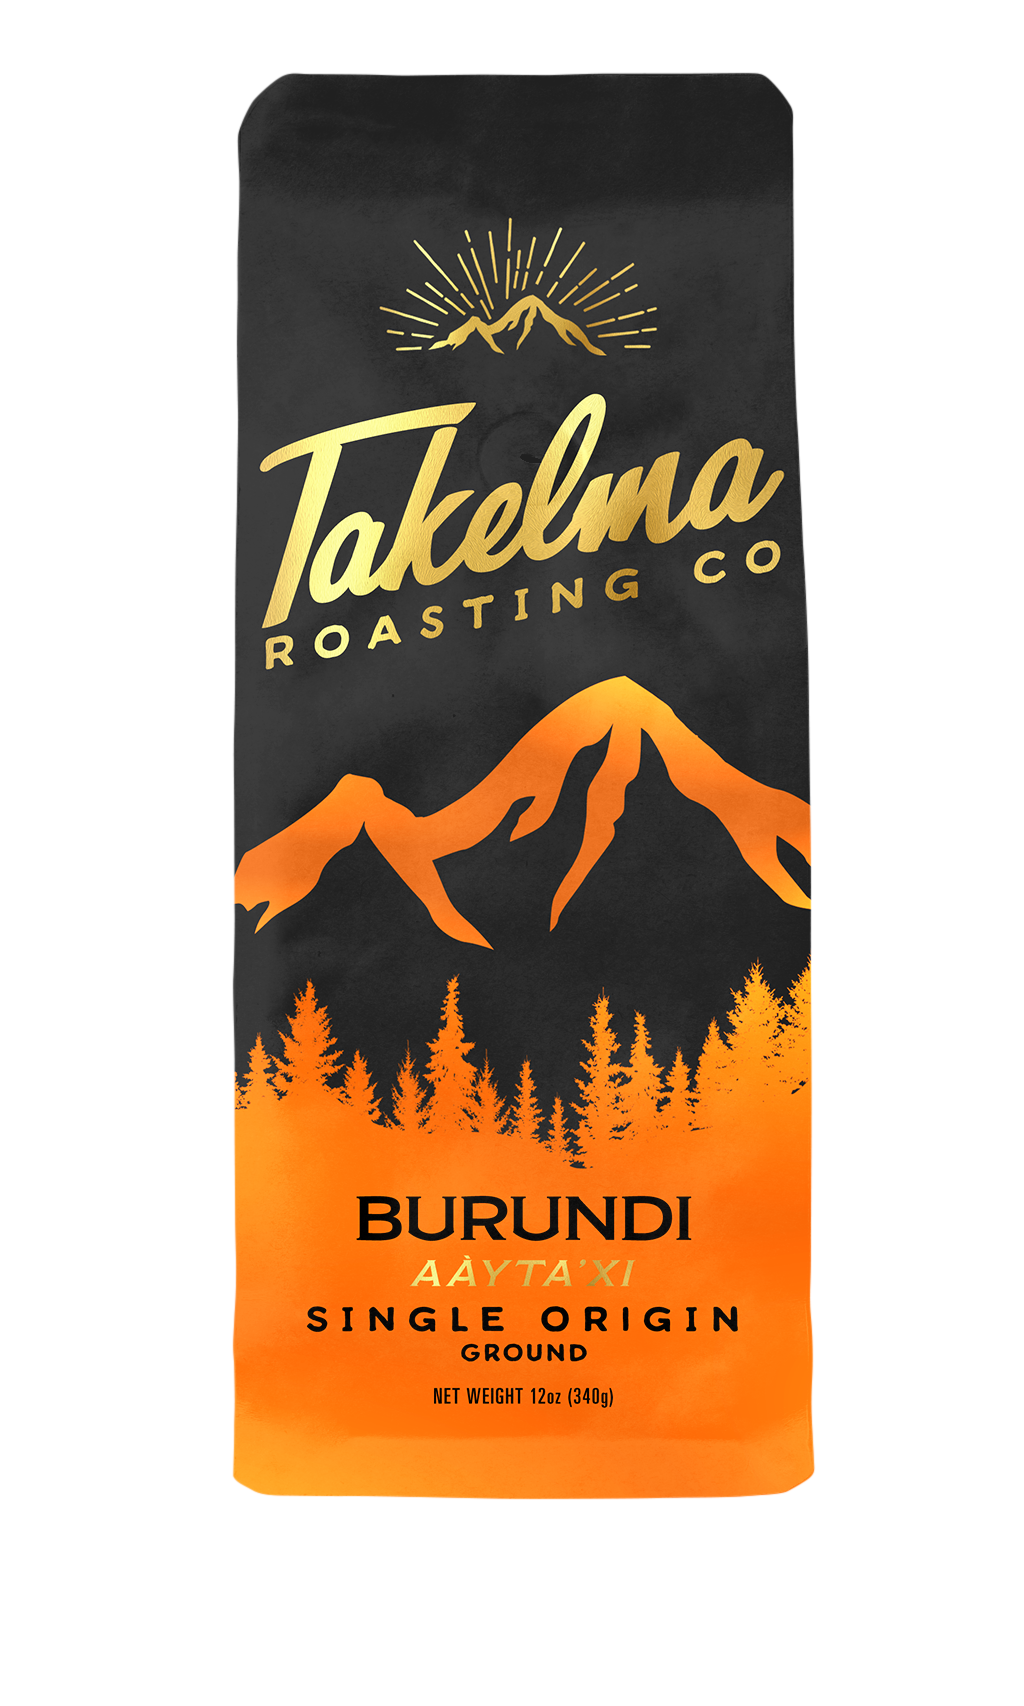 Burundi Single Origin Roast Coffee